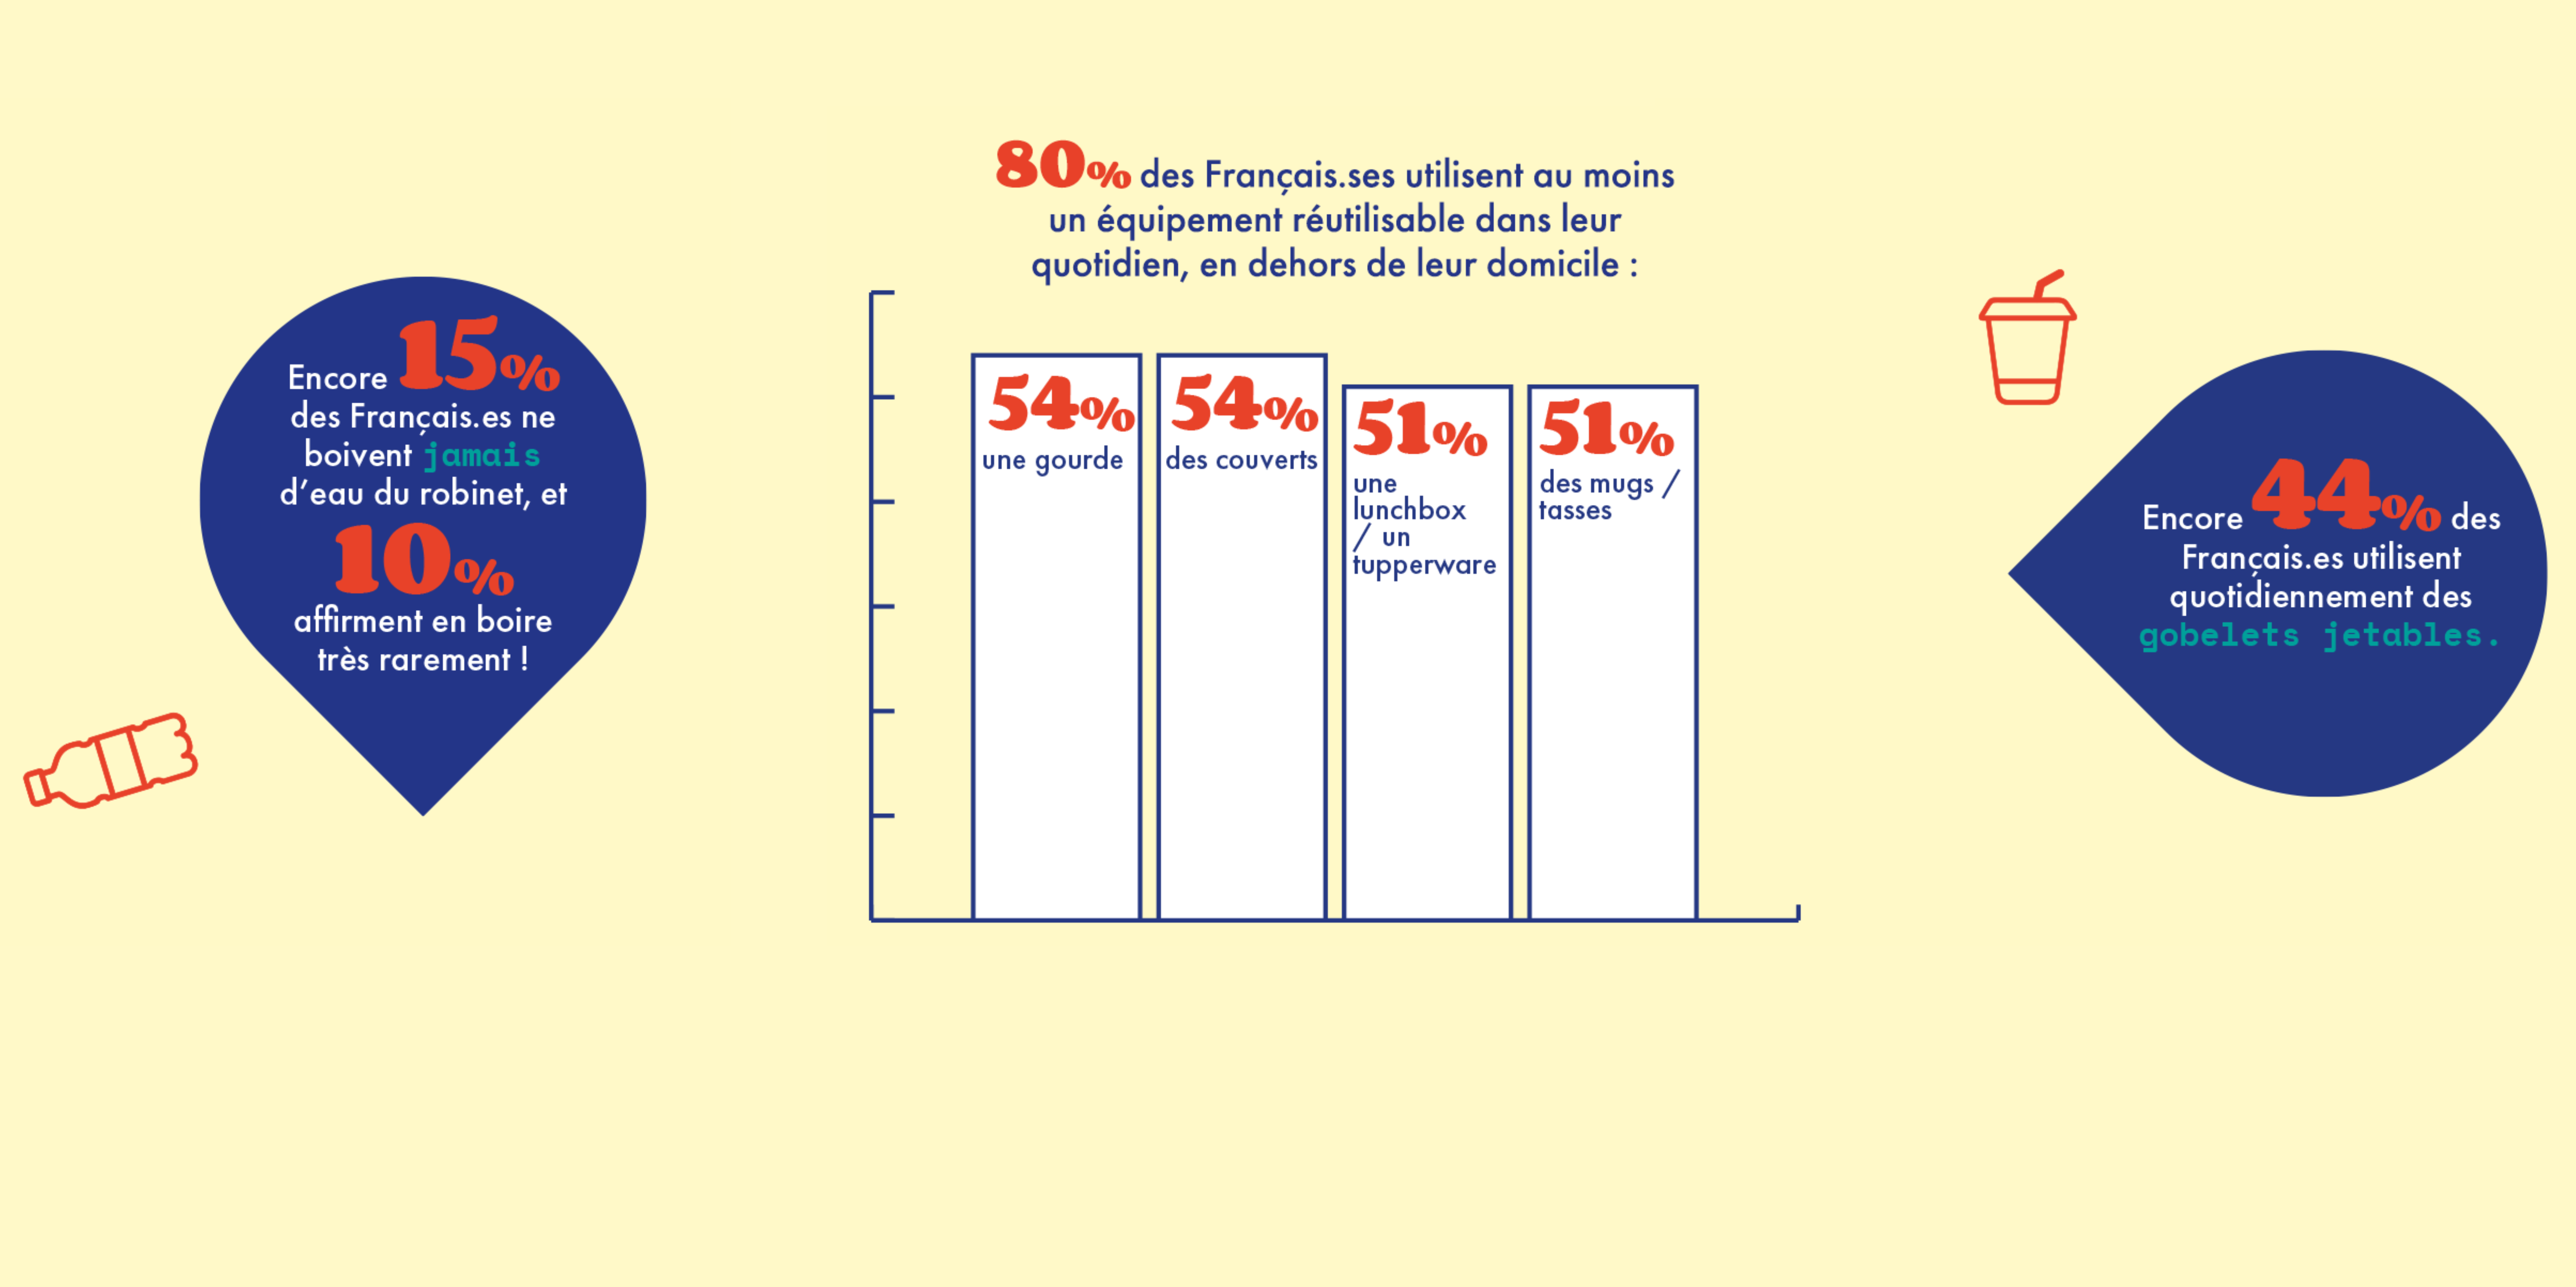 80% des Français.ses utilisent au moins un équipement réutilisable dans leur quotidien, en dehors de leur domicile : 